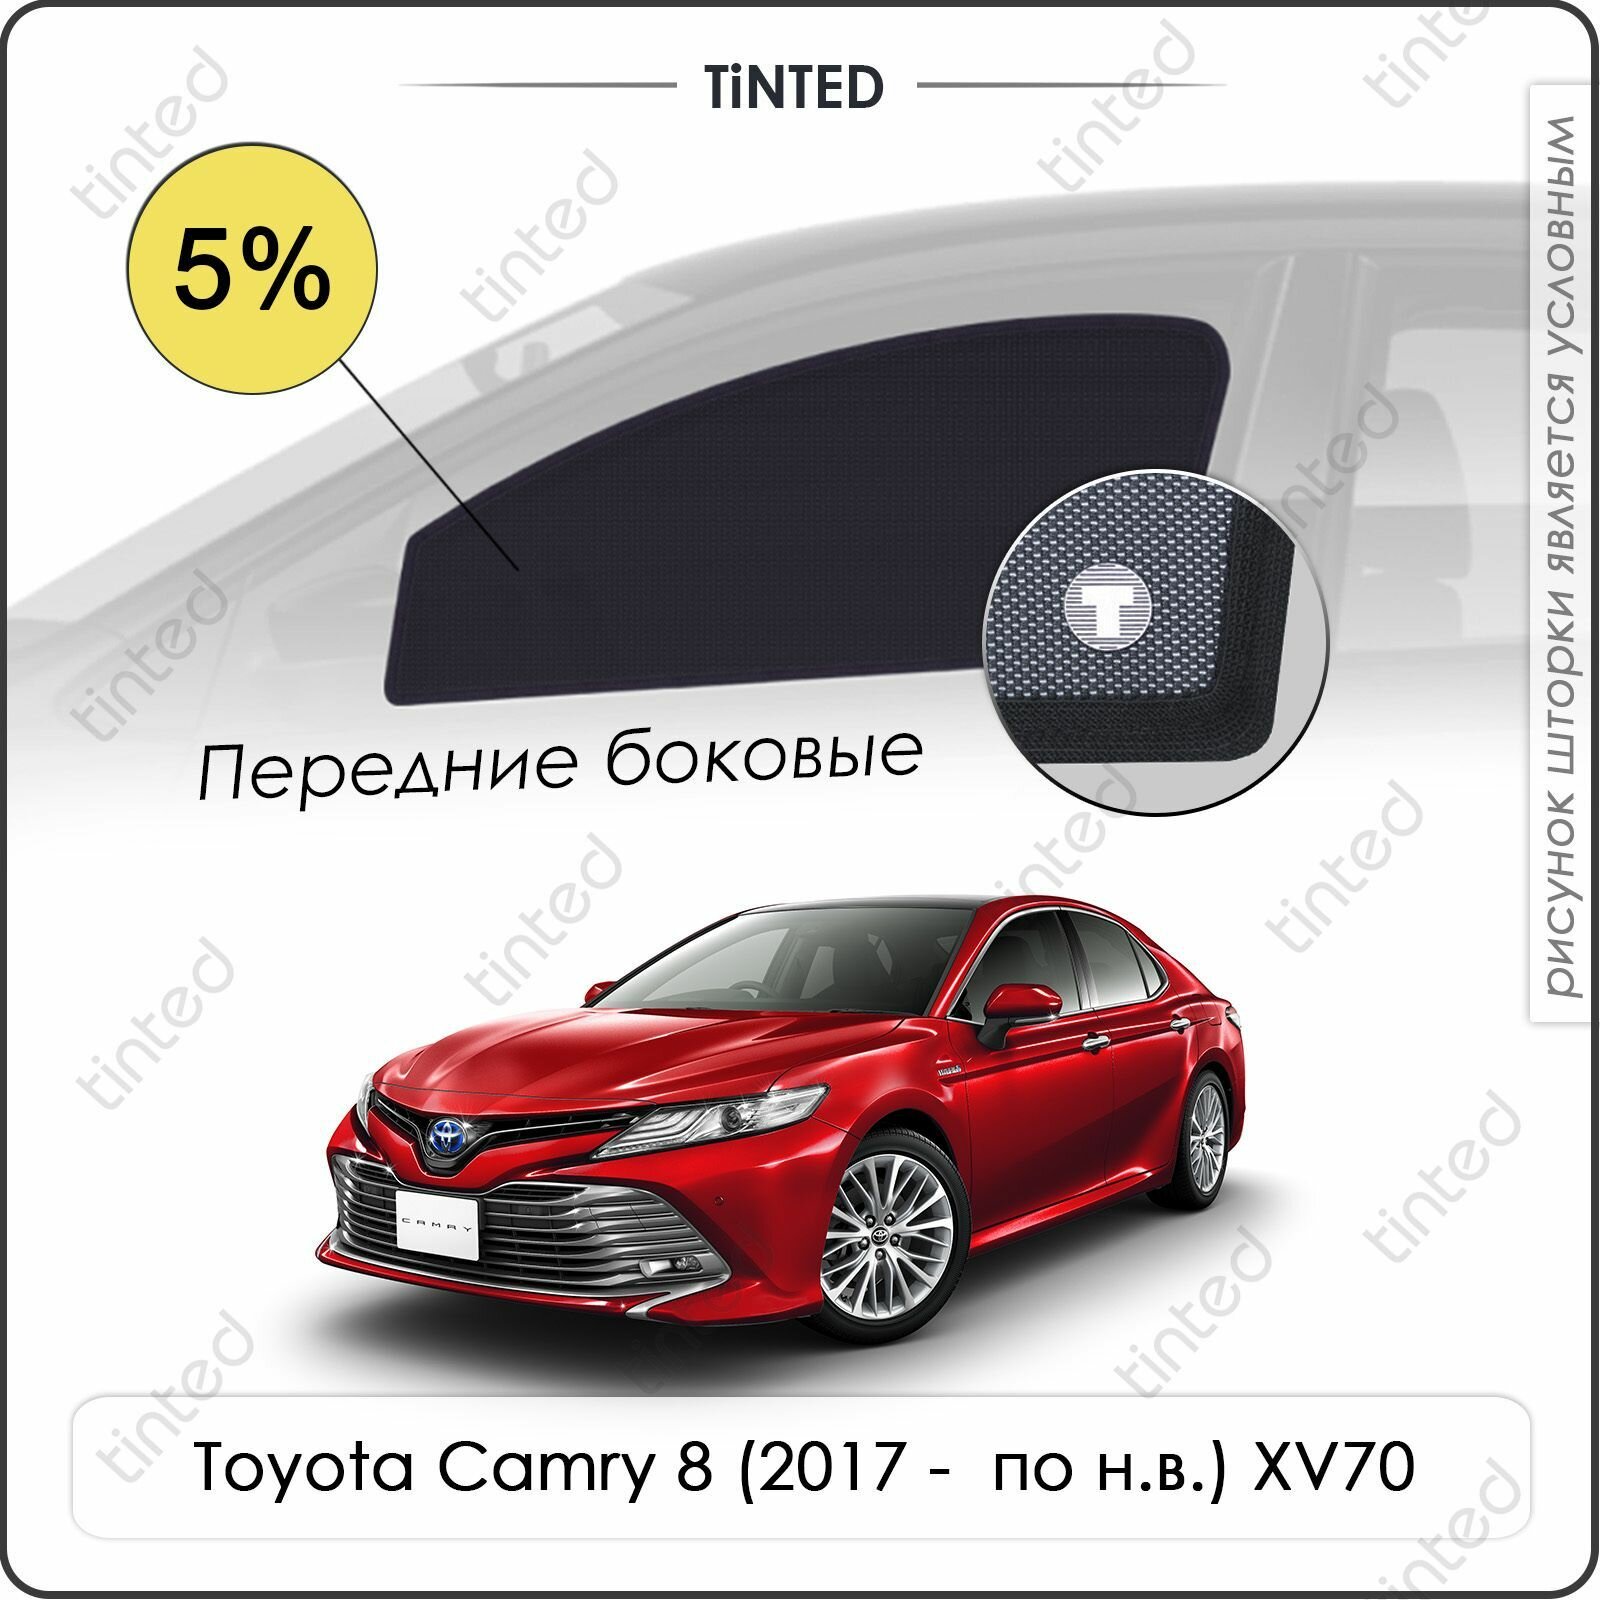 Шторки на автомобиль солнцезащитные Toyota Camry 8 Седан 4дв. (2017 - по н. в.) XV70 на передние двери 5%, сетки от солнца в машину тойота камри, Каркасные автошторки Premium